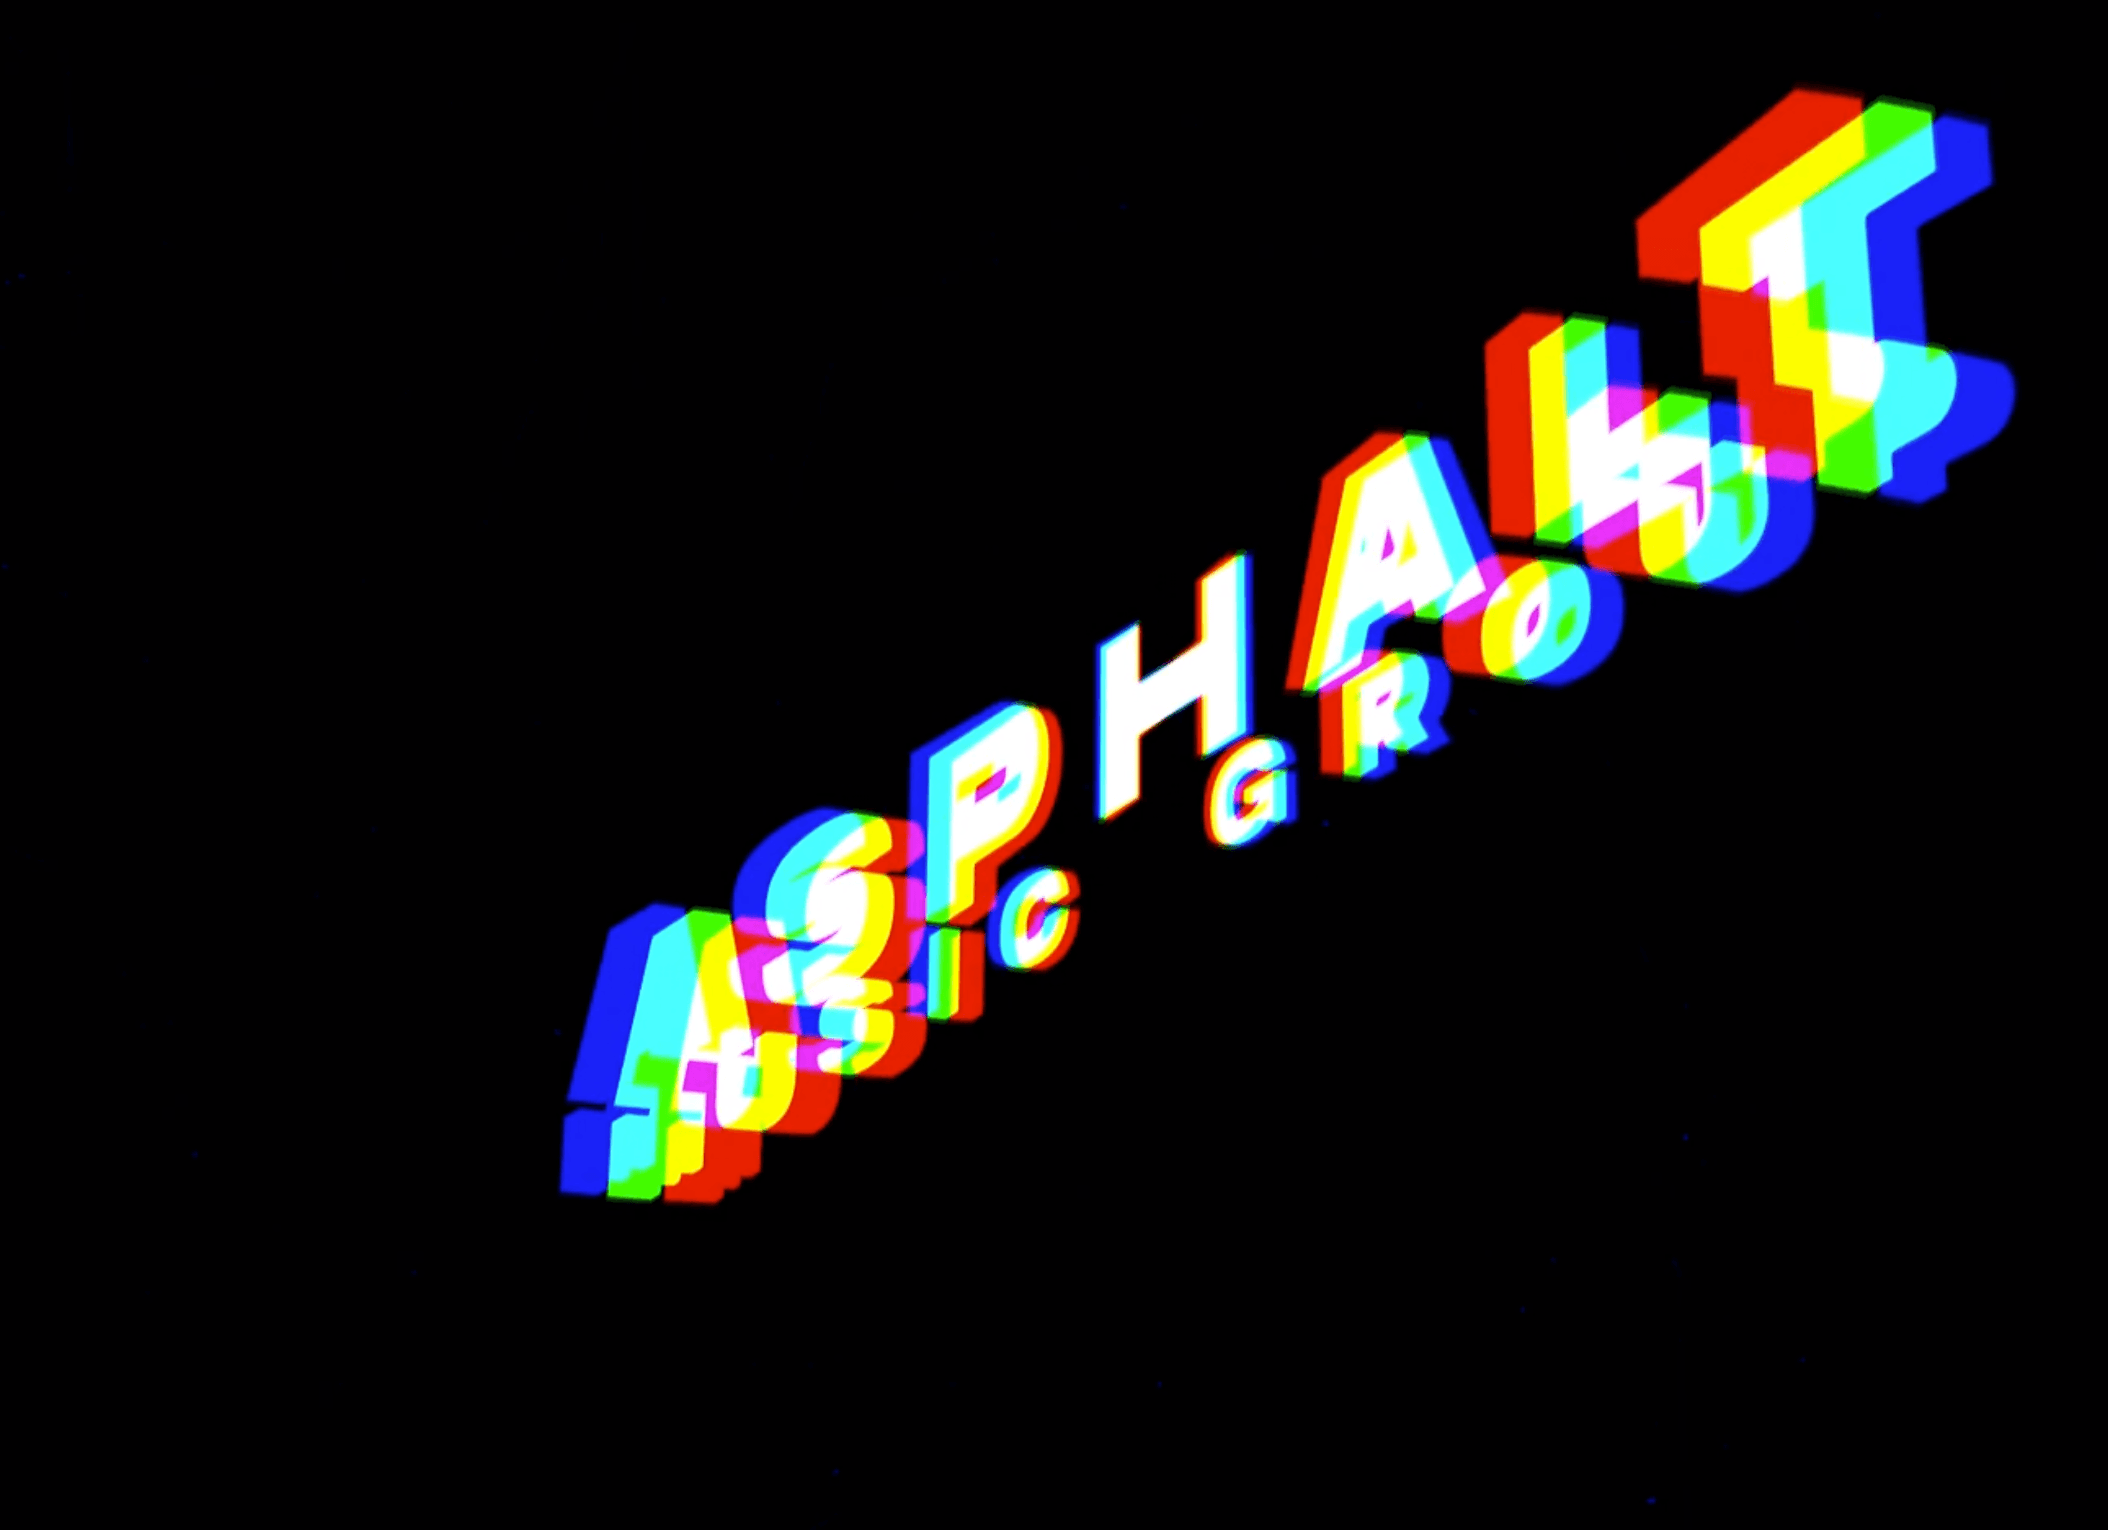 MP4 - Asphalt Music Group Logo Reveal